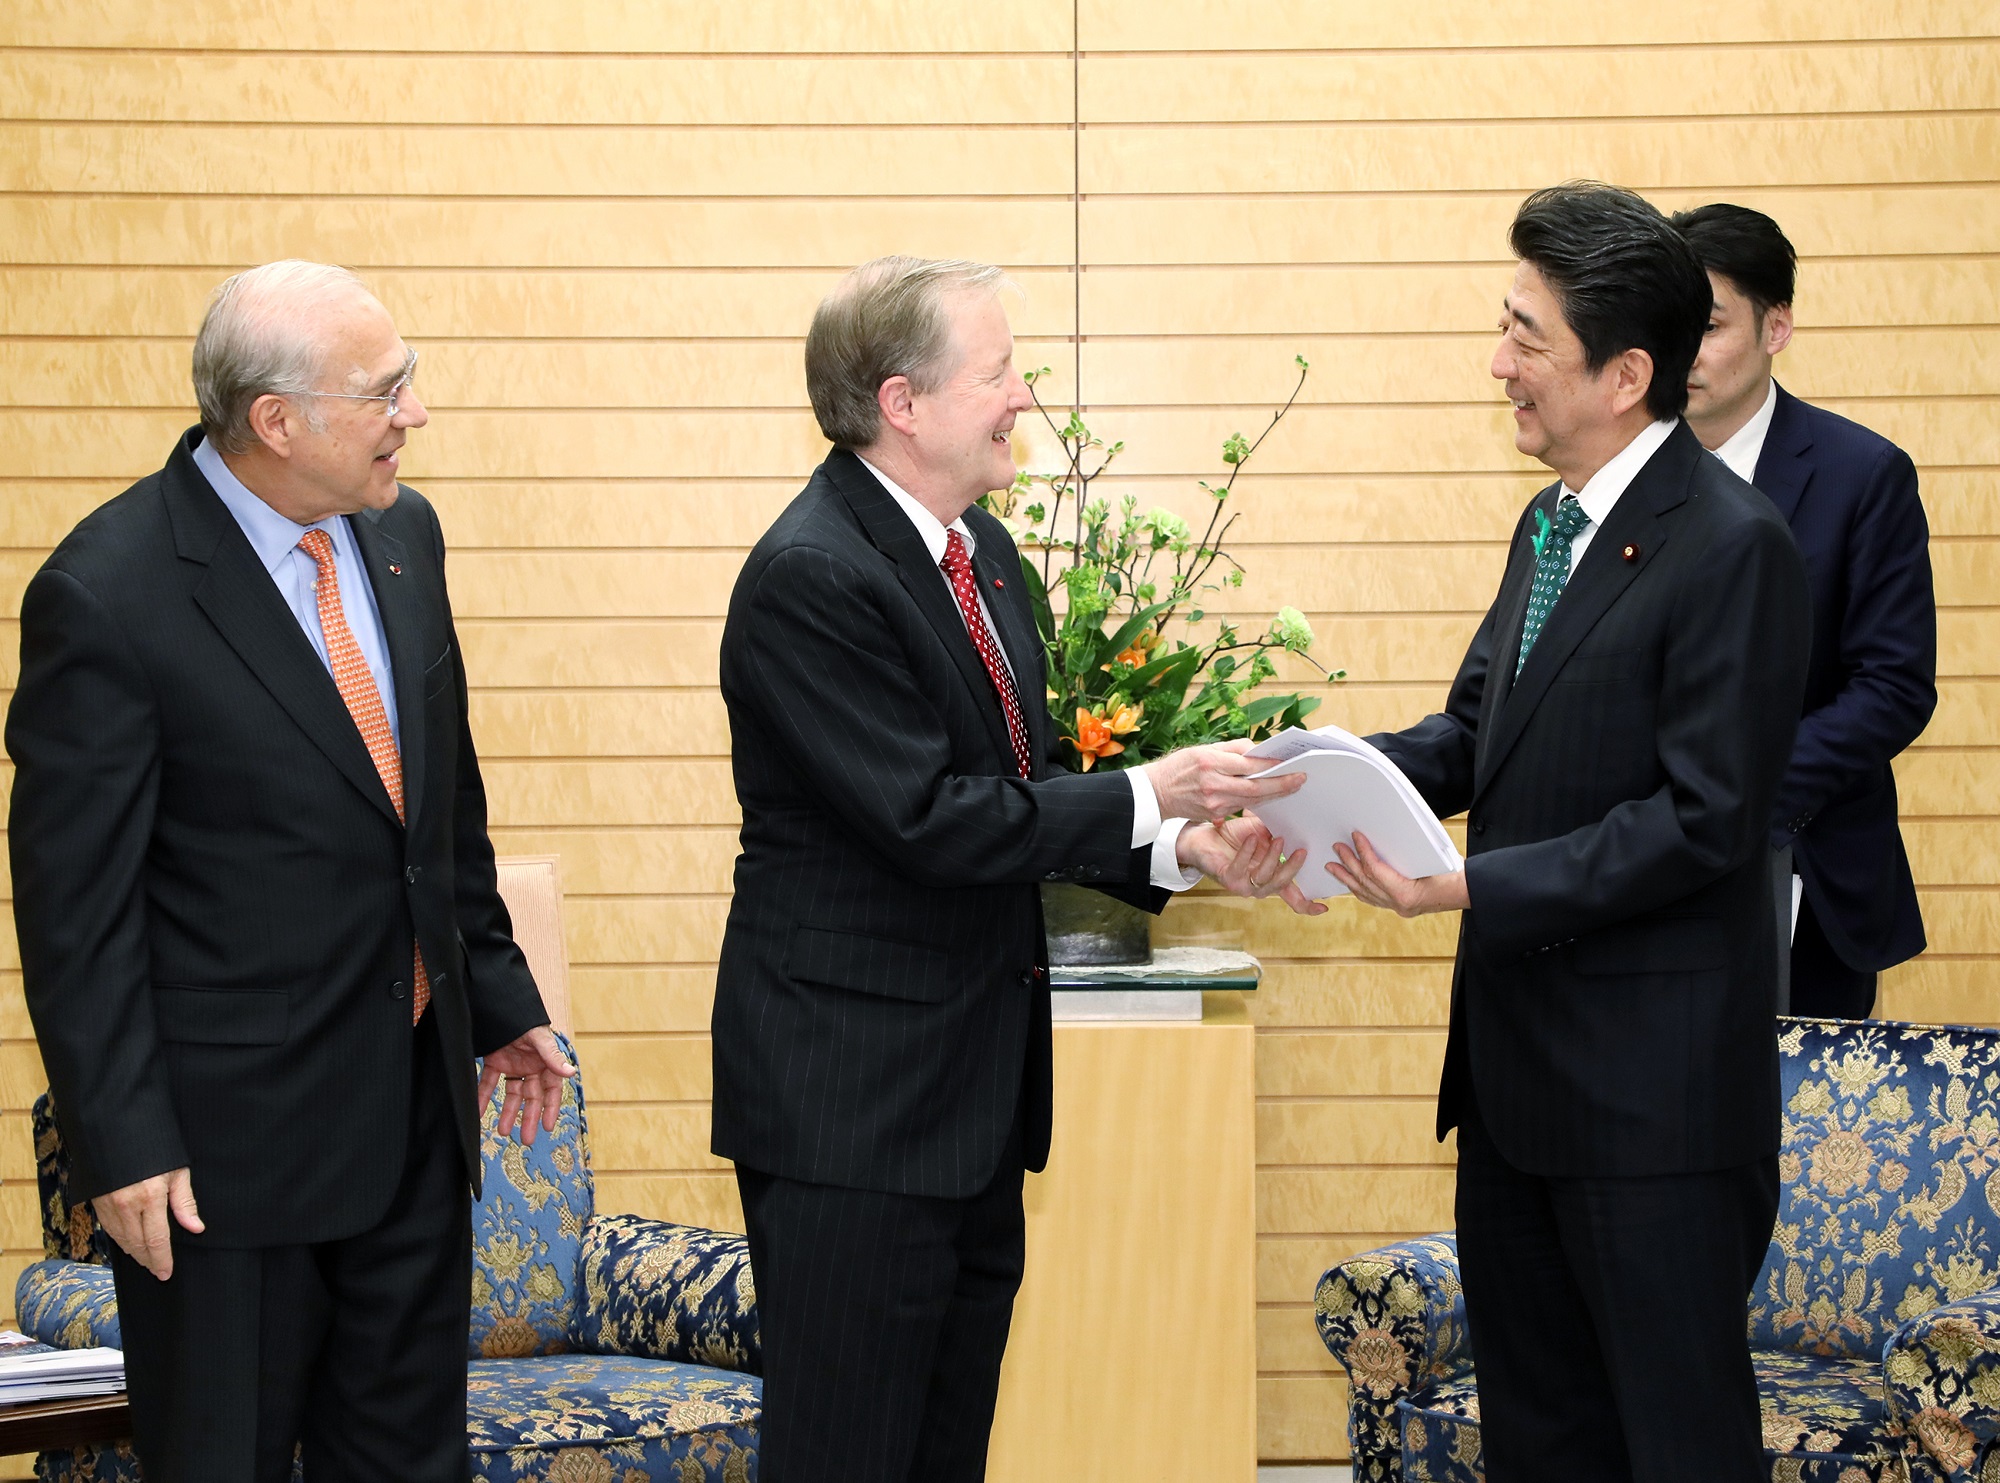 ジョーンズＯＥＣＤシニアエコノミスト・経済局日本韓国課長による表敬を受ける安倍総理